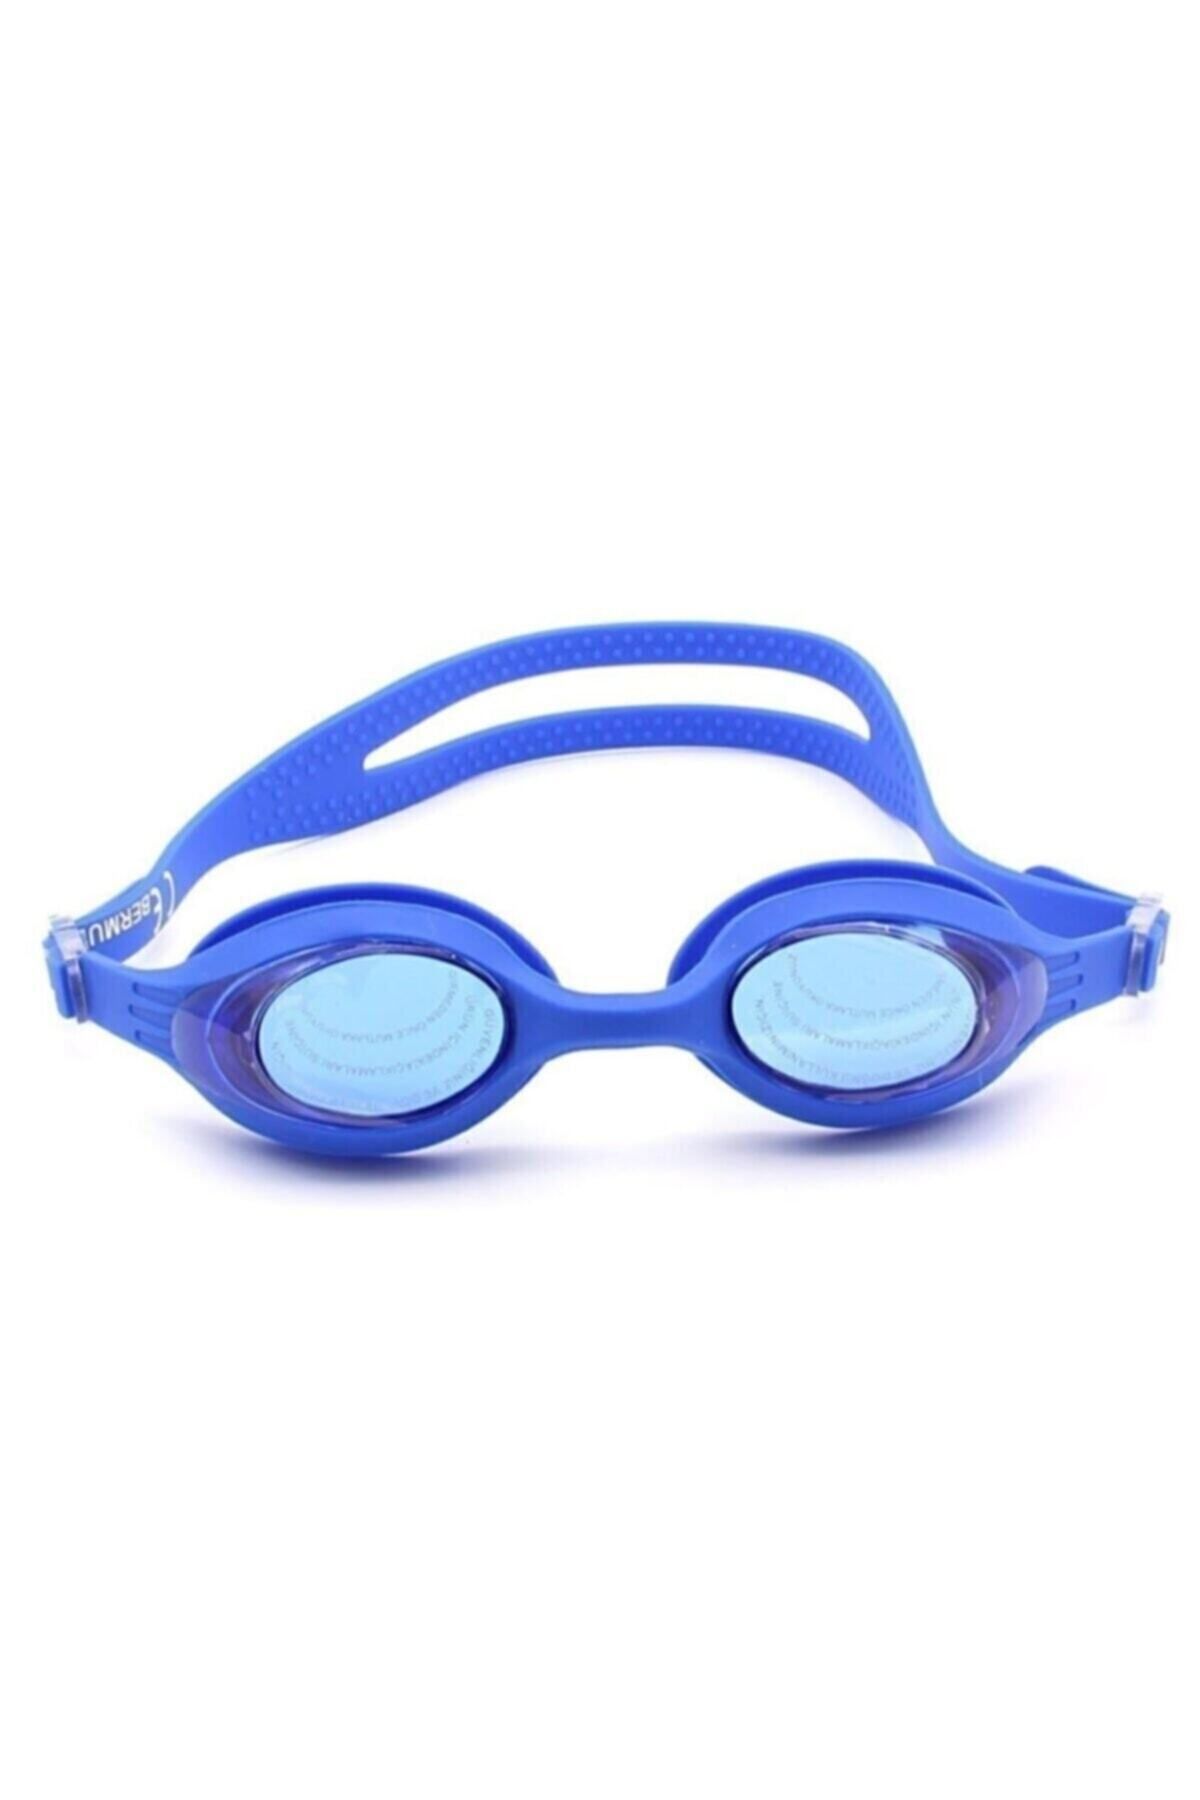 Valetto Çocuk Deniz Havuz Dalış Yüzücü Gözlüğü Antrenman Gözlüğü 9 + 20 Yaş